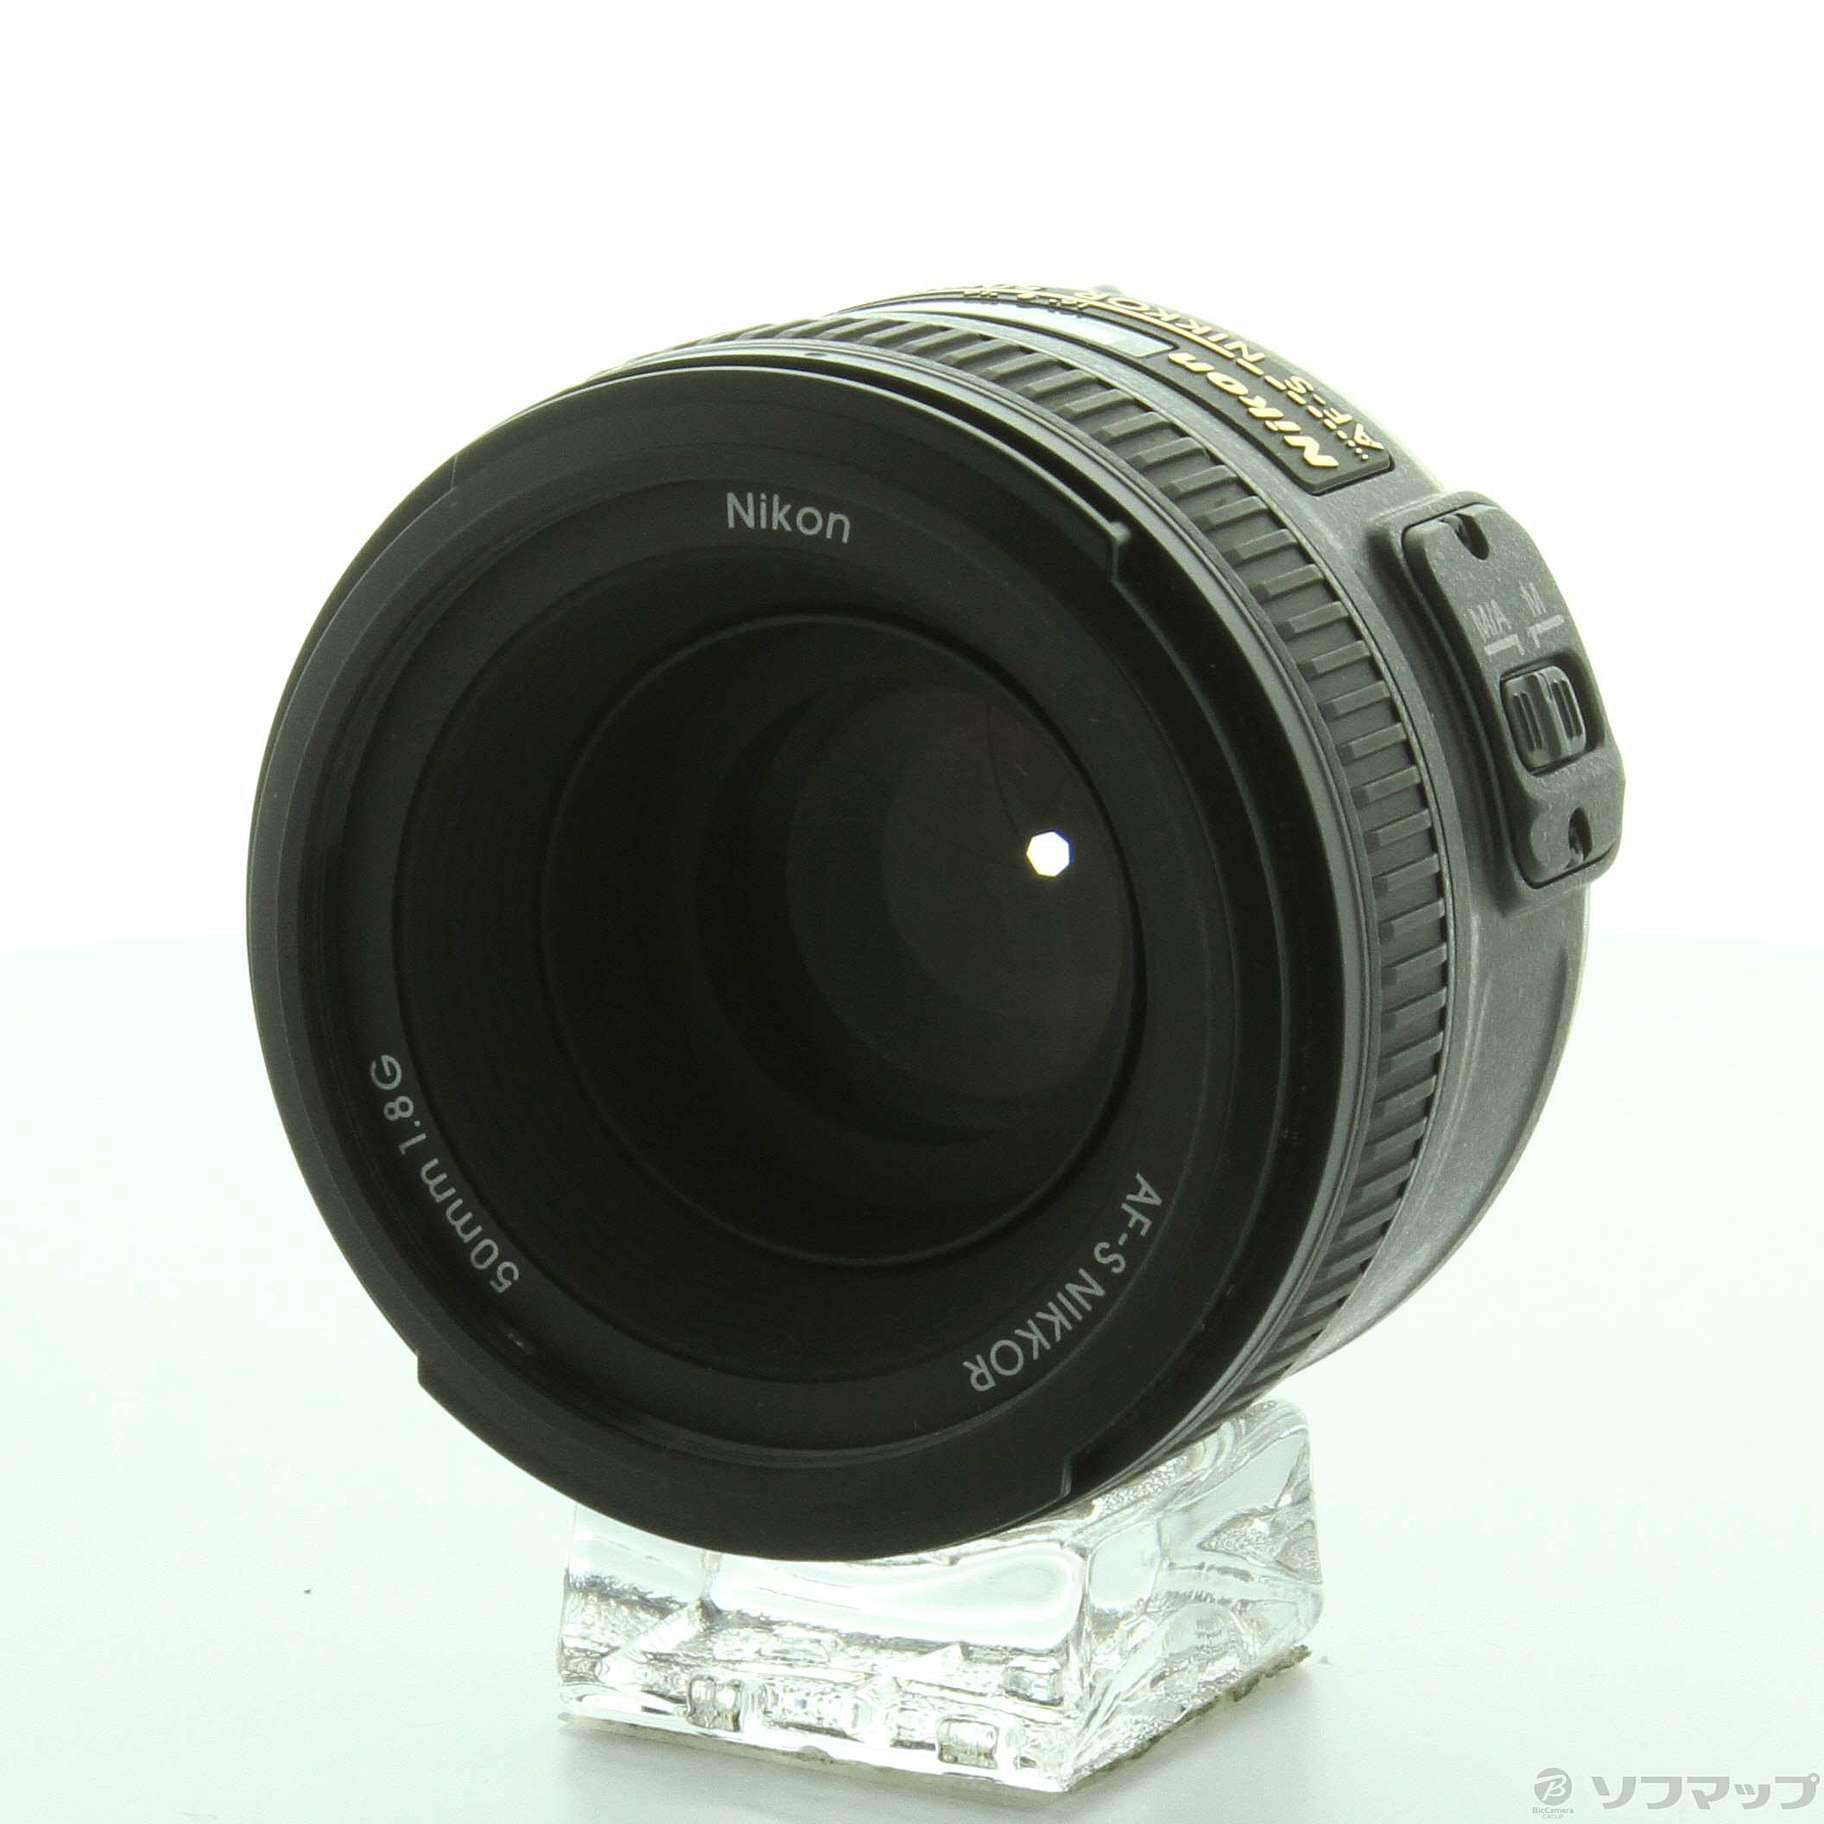 ニコン AF-S NIKKOR 50mm f/1.8G